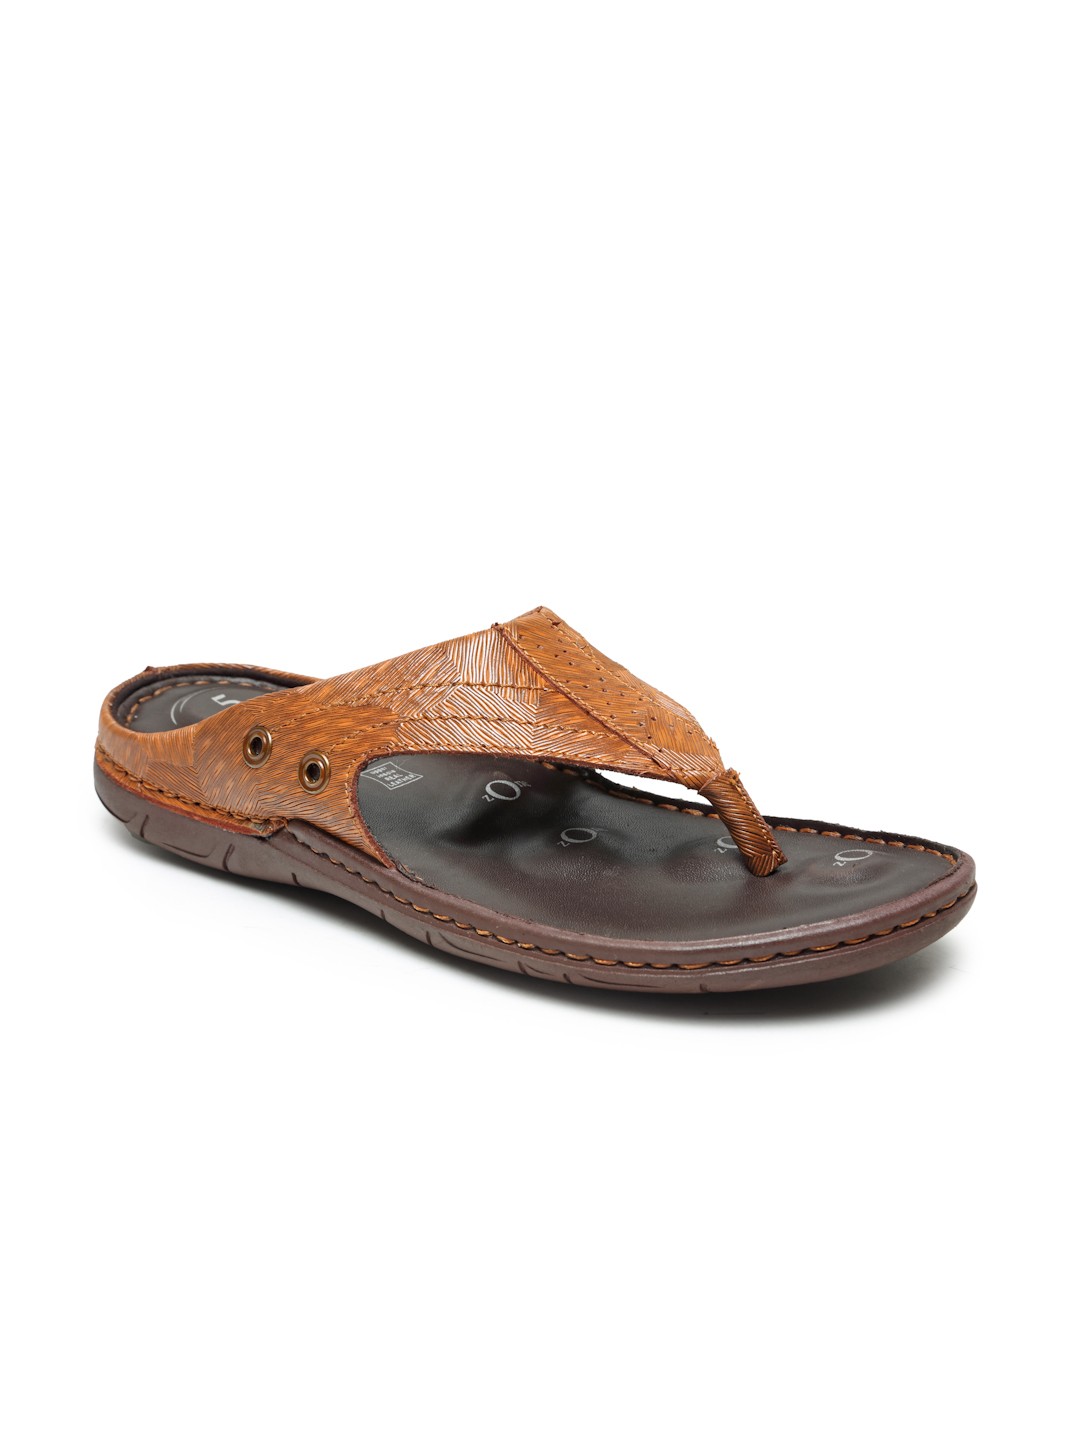 Buy Von Wellx Germany Comfort Men's Tan Slippers Alex Online in Aurangabad